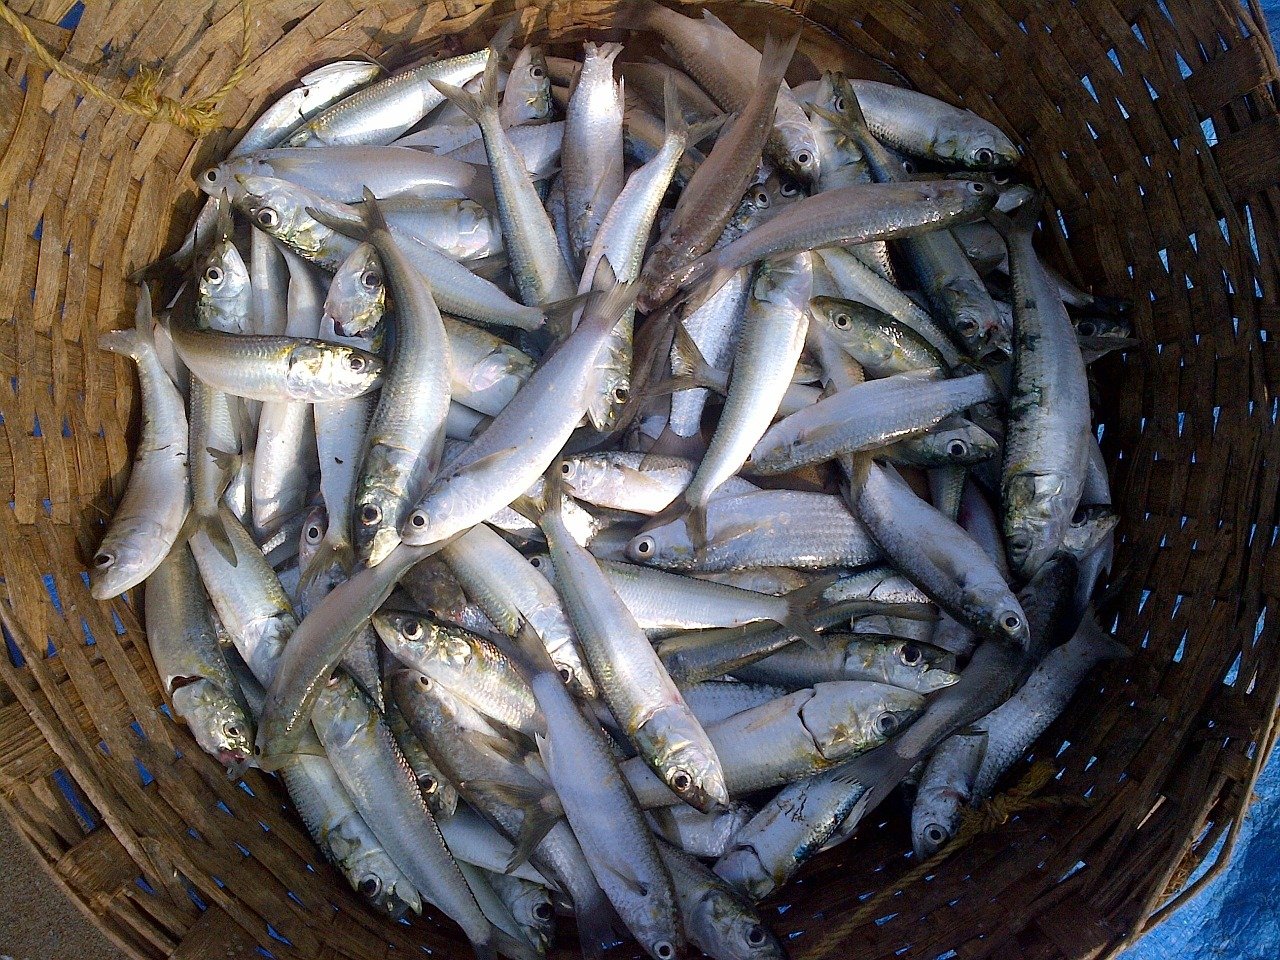 indian fishing fish price in india uttar pradesh 